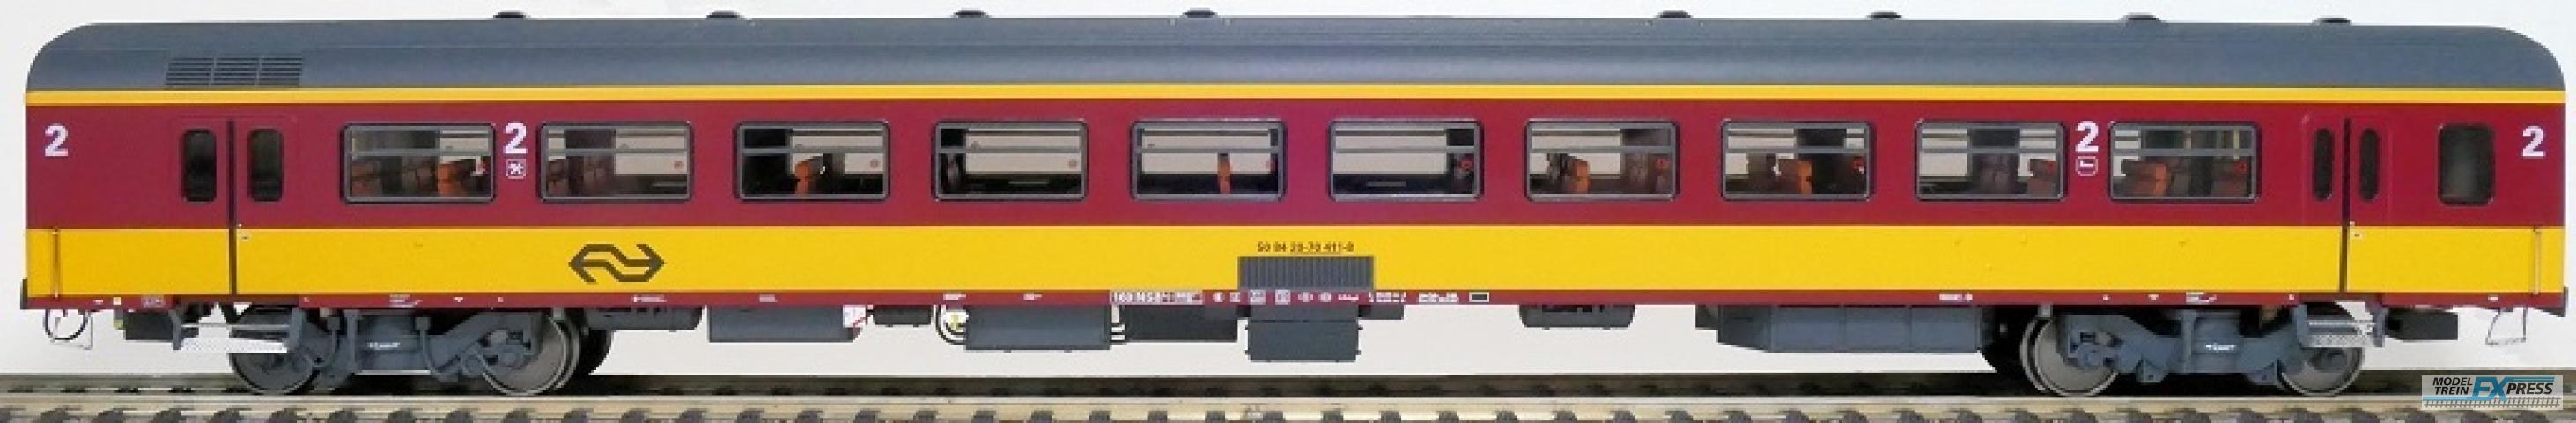 Exact-train 11085 NS ICR (Originalversion) für den Beneluxzug nach Belgien Reisezugwagen B ( Farbe Gelb / Rot), Ep. IV